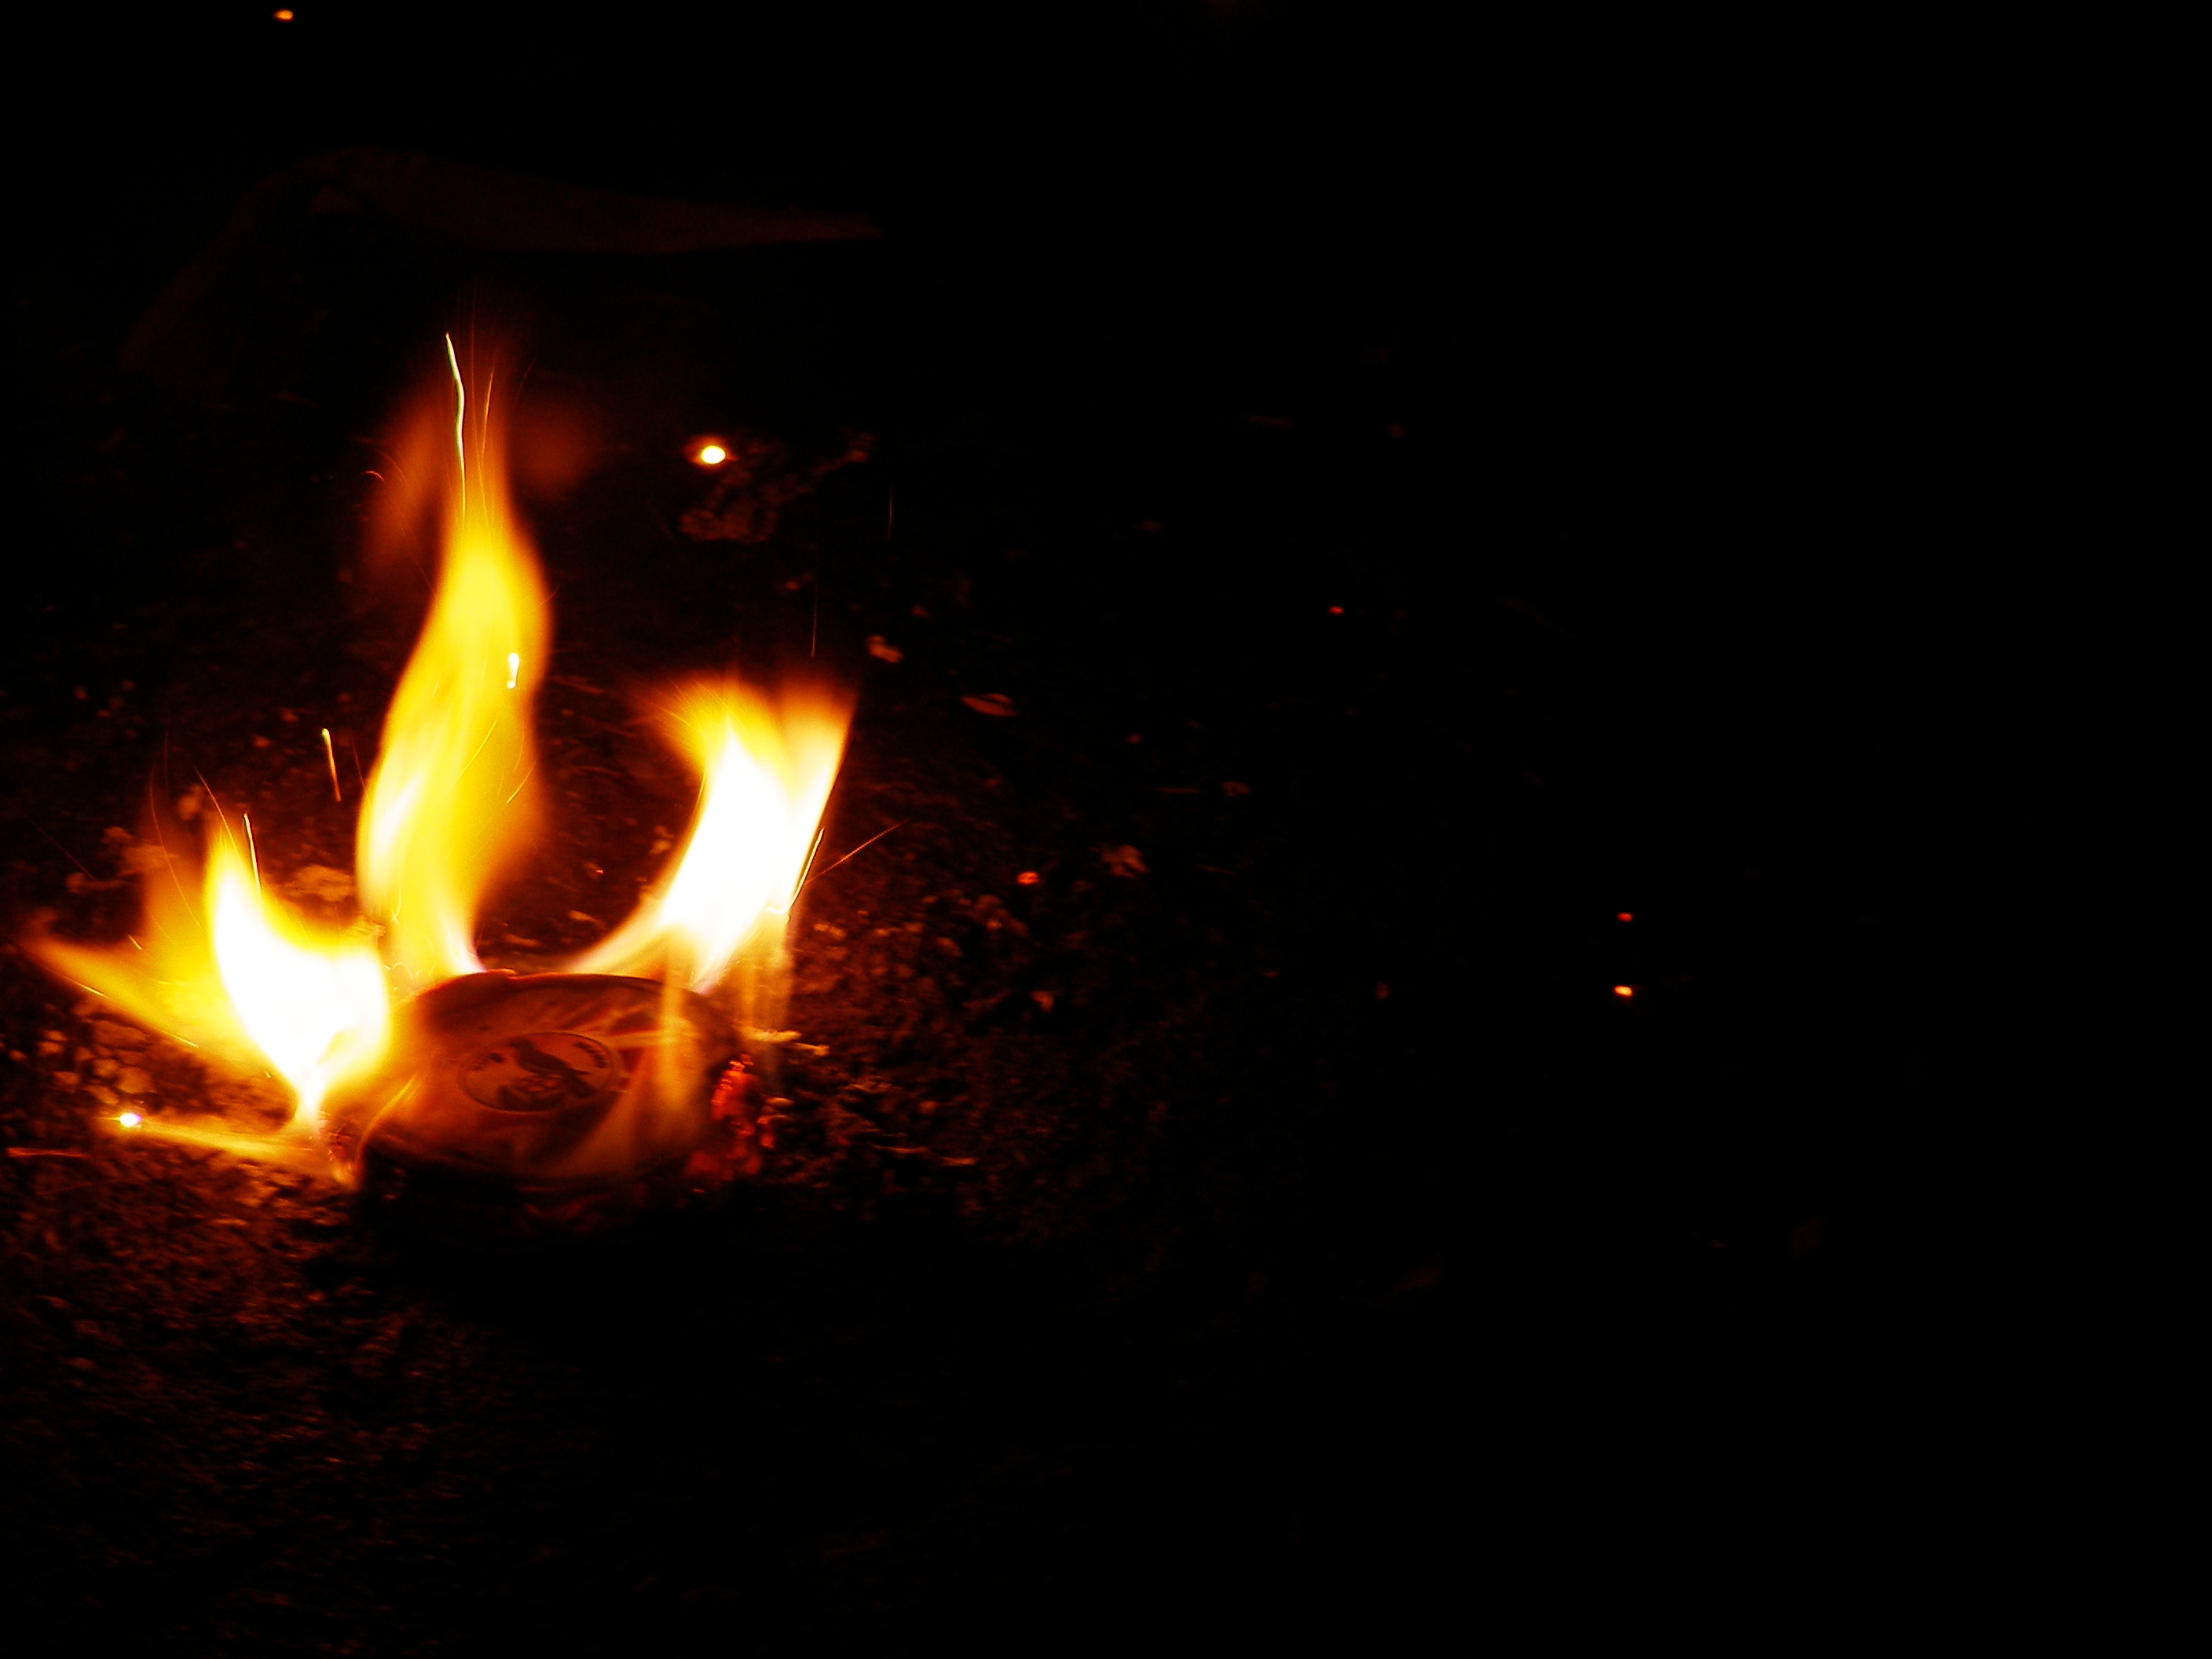 Flames and shadows, Ashes, Bspo06, Burn, Dark, HQ Photo